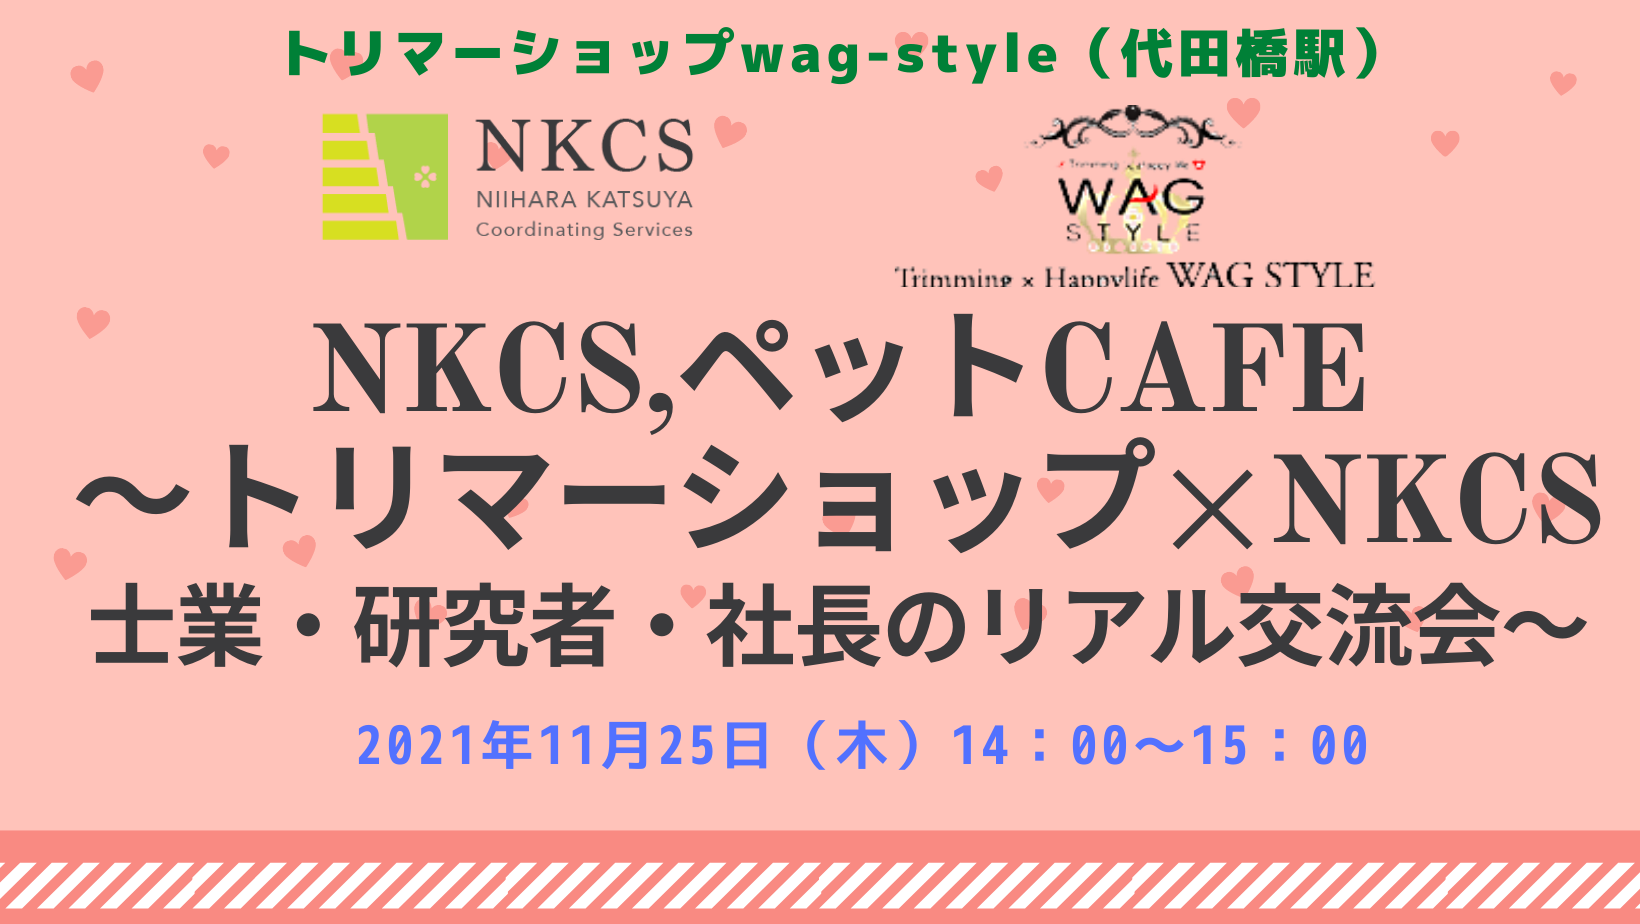 2021年11月25日木曜日 14:00〜 NKCS,ペットCAFE  ～渋谷区トリマーショップ×NKCS士業・研究者・社長のリアル交流会～を開催します